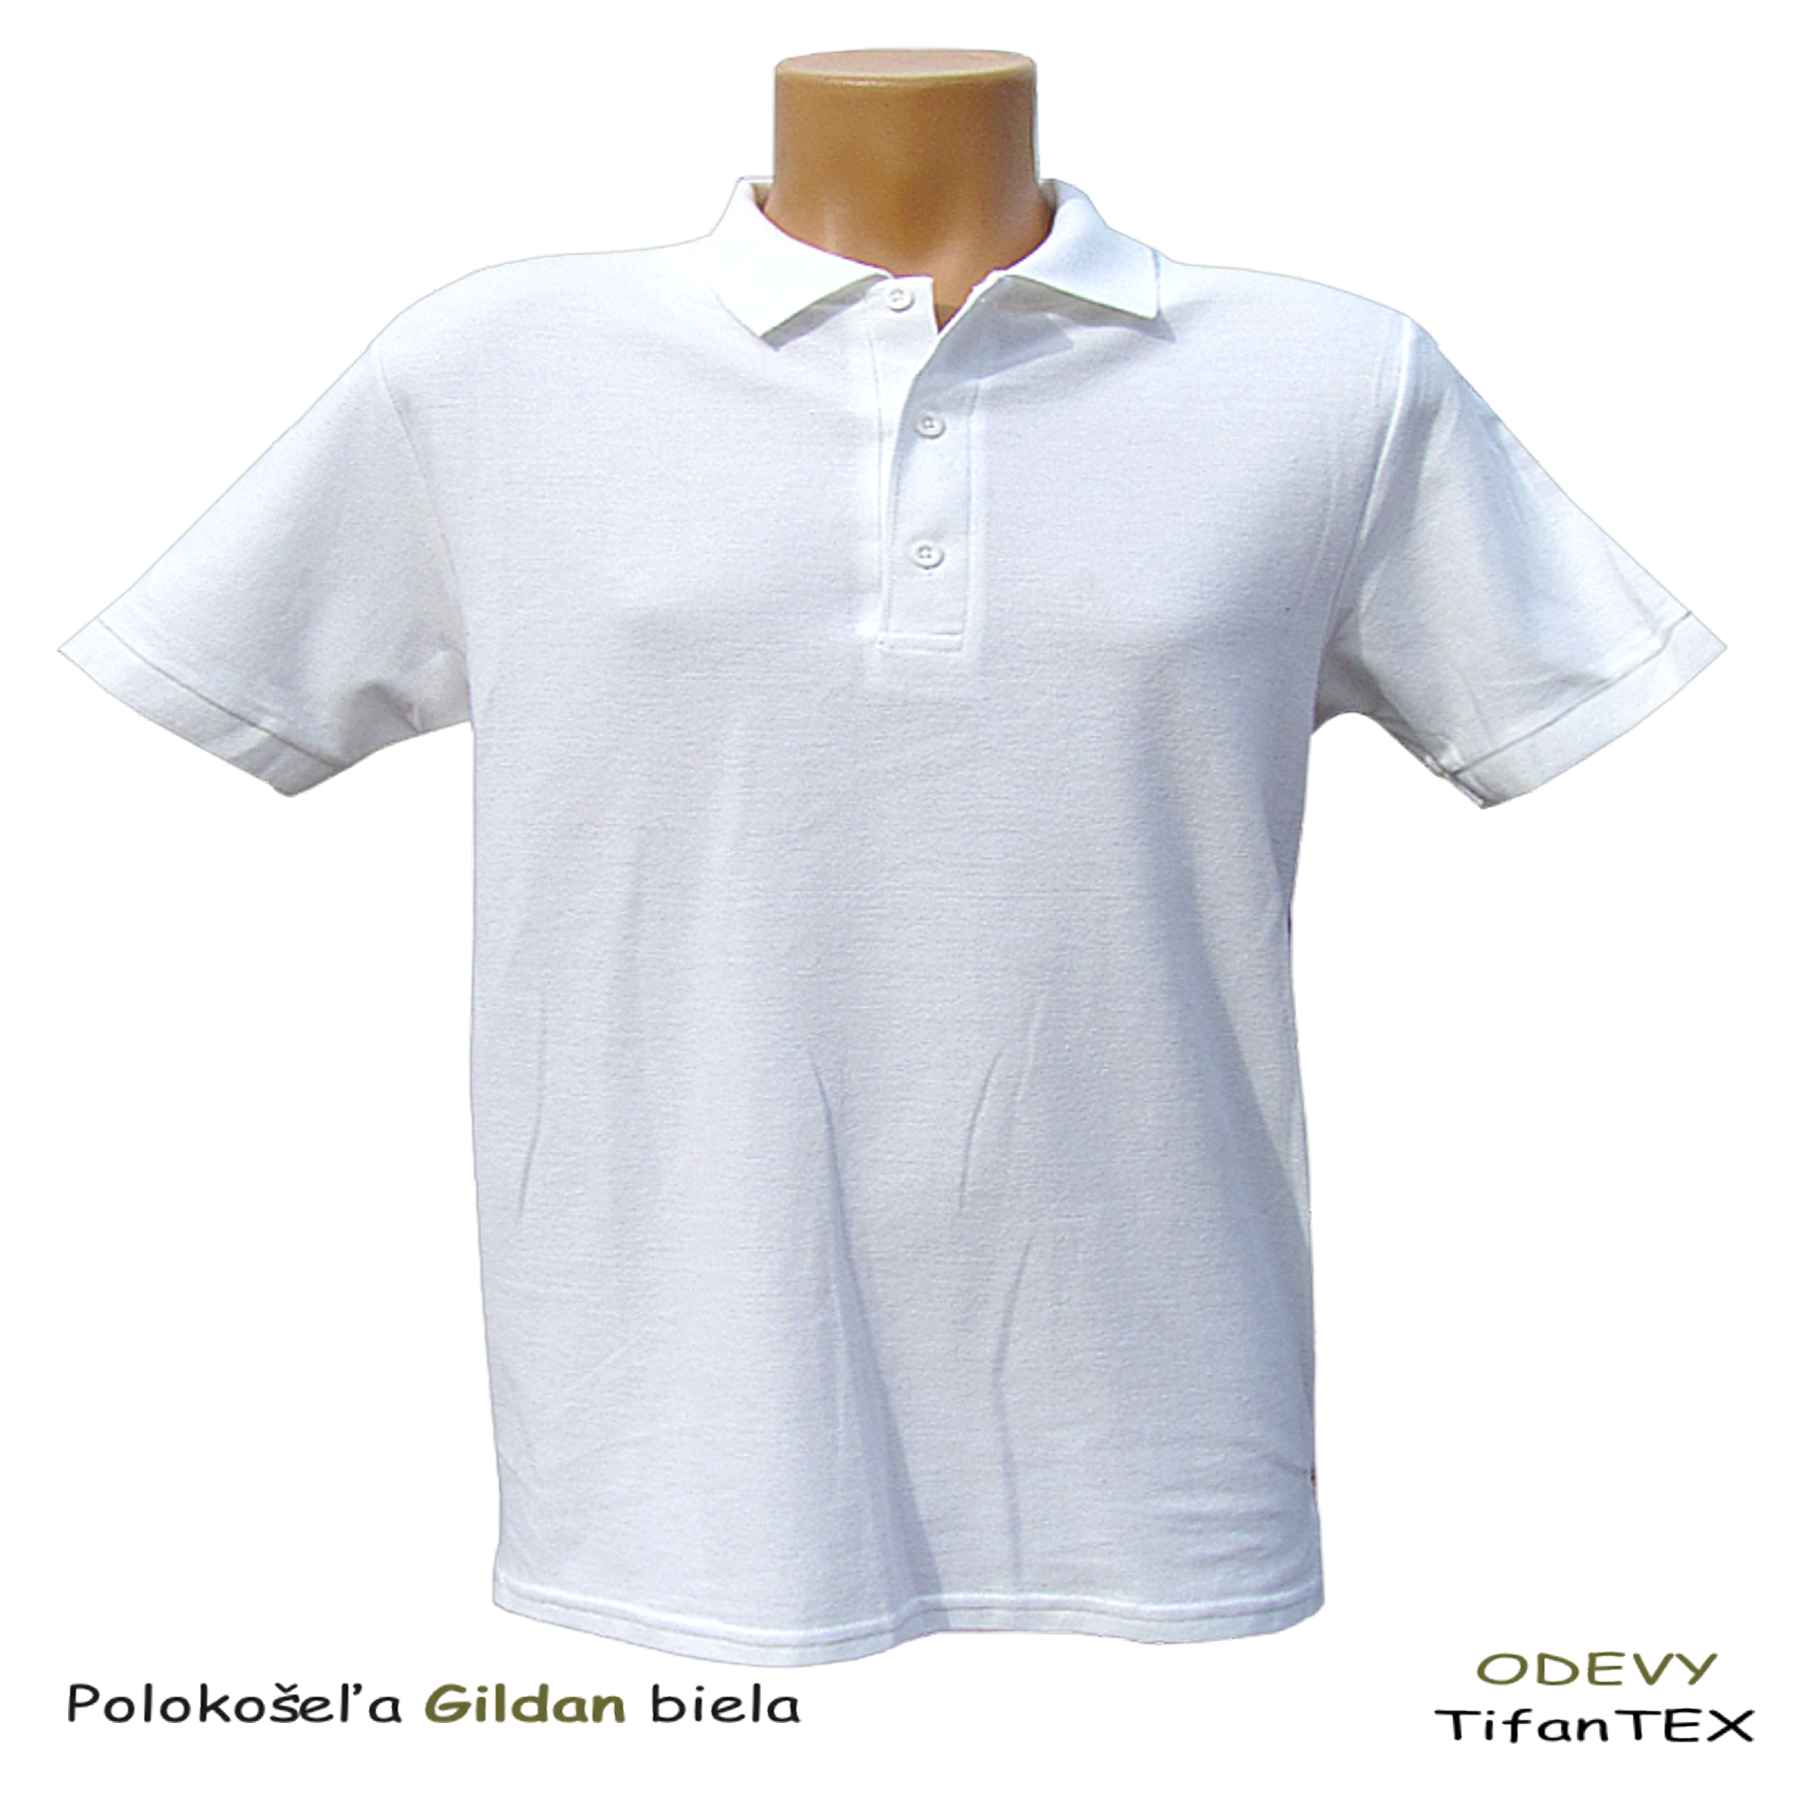 Bavlnená polokošeľa pánska Gildan biela, pracovné odevy Tifantex